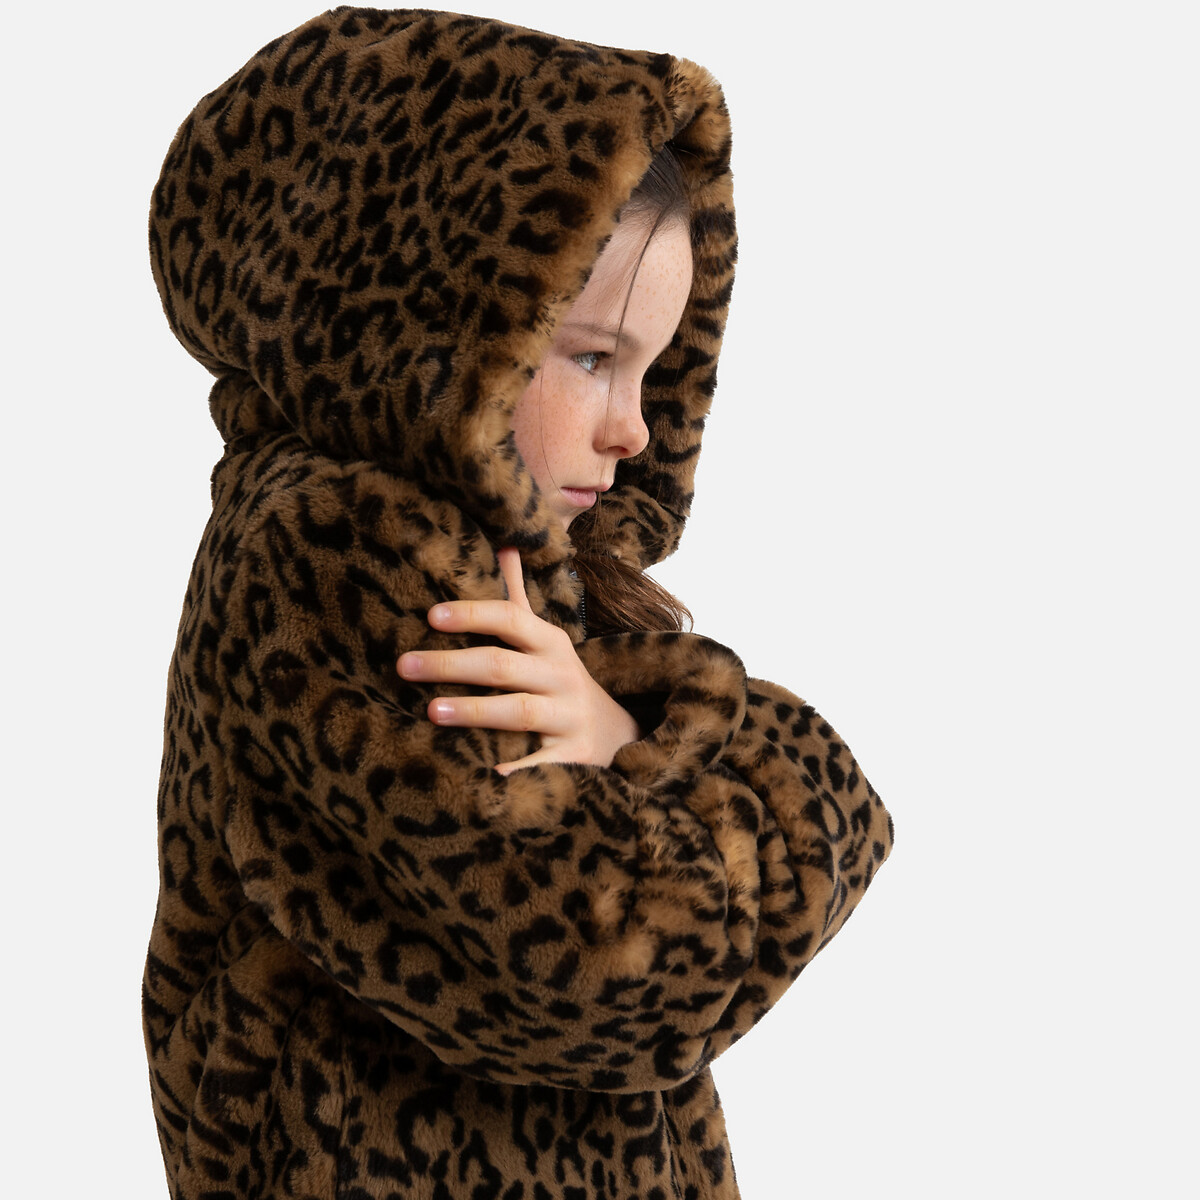 Leopard Print Hooded Coat In Faux Fur, Cheetah Faux Fur Coat With Hoodie